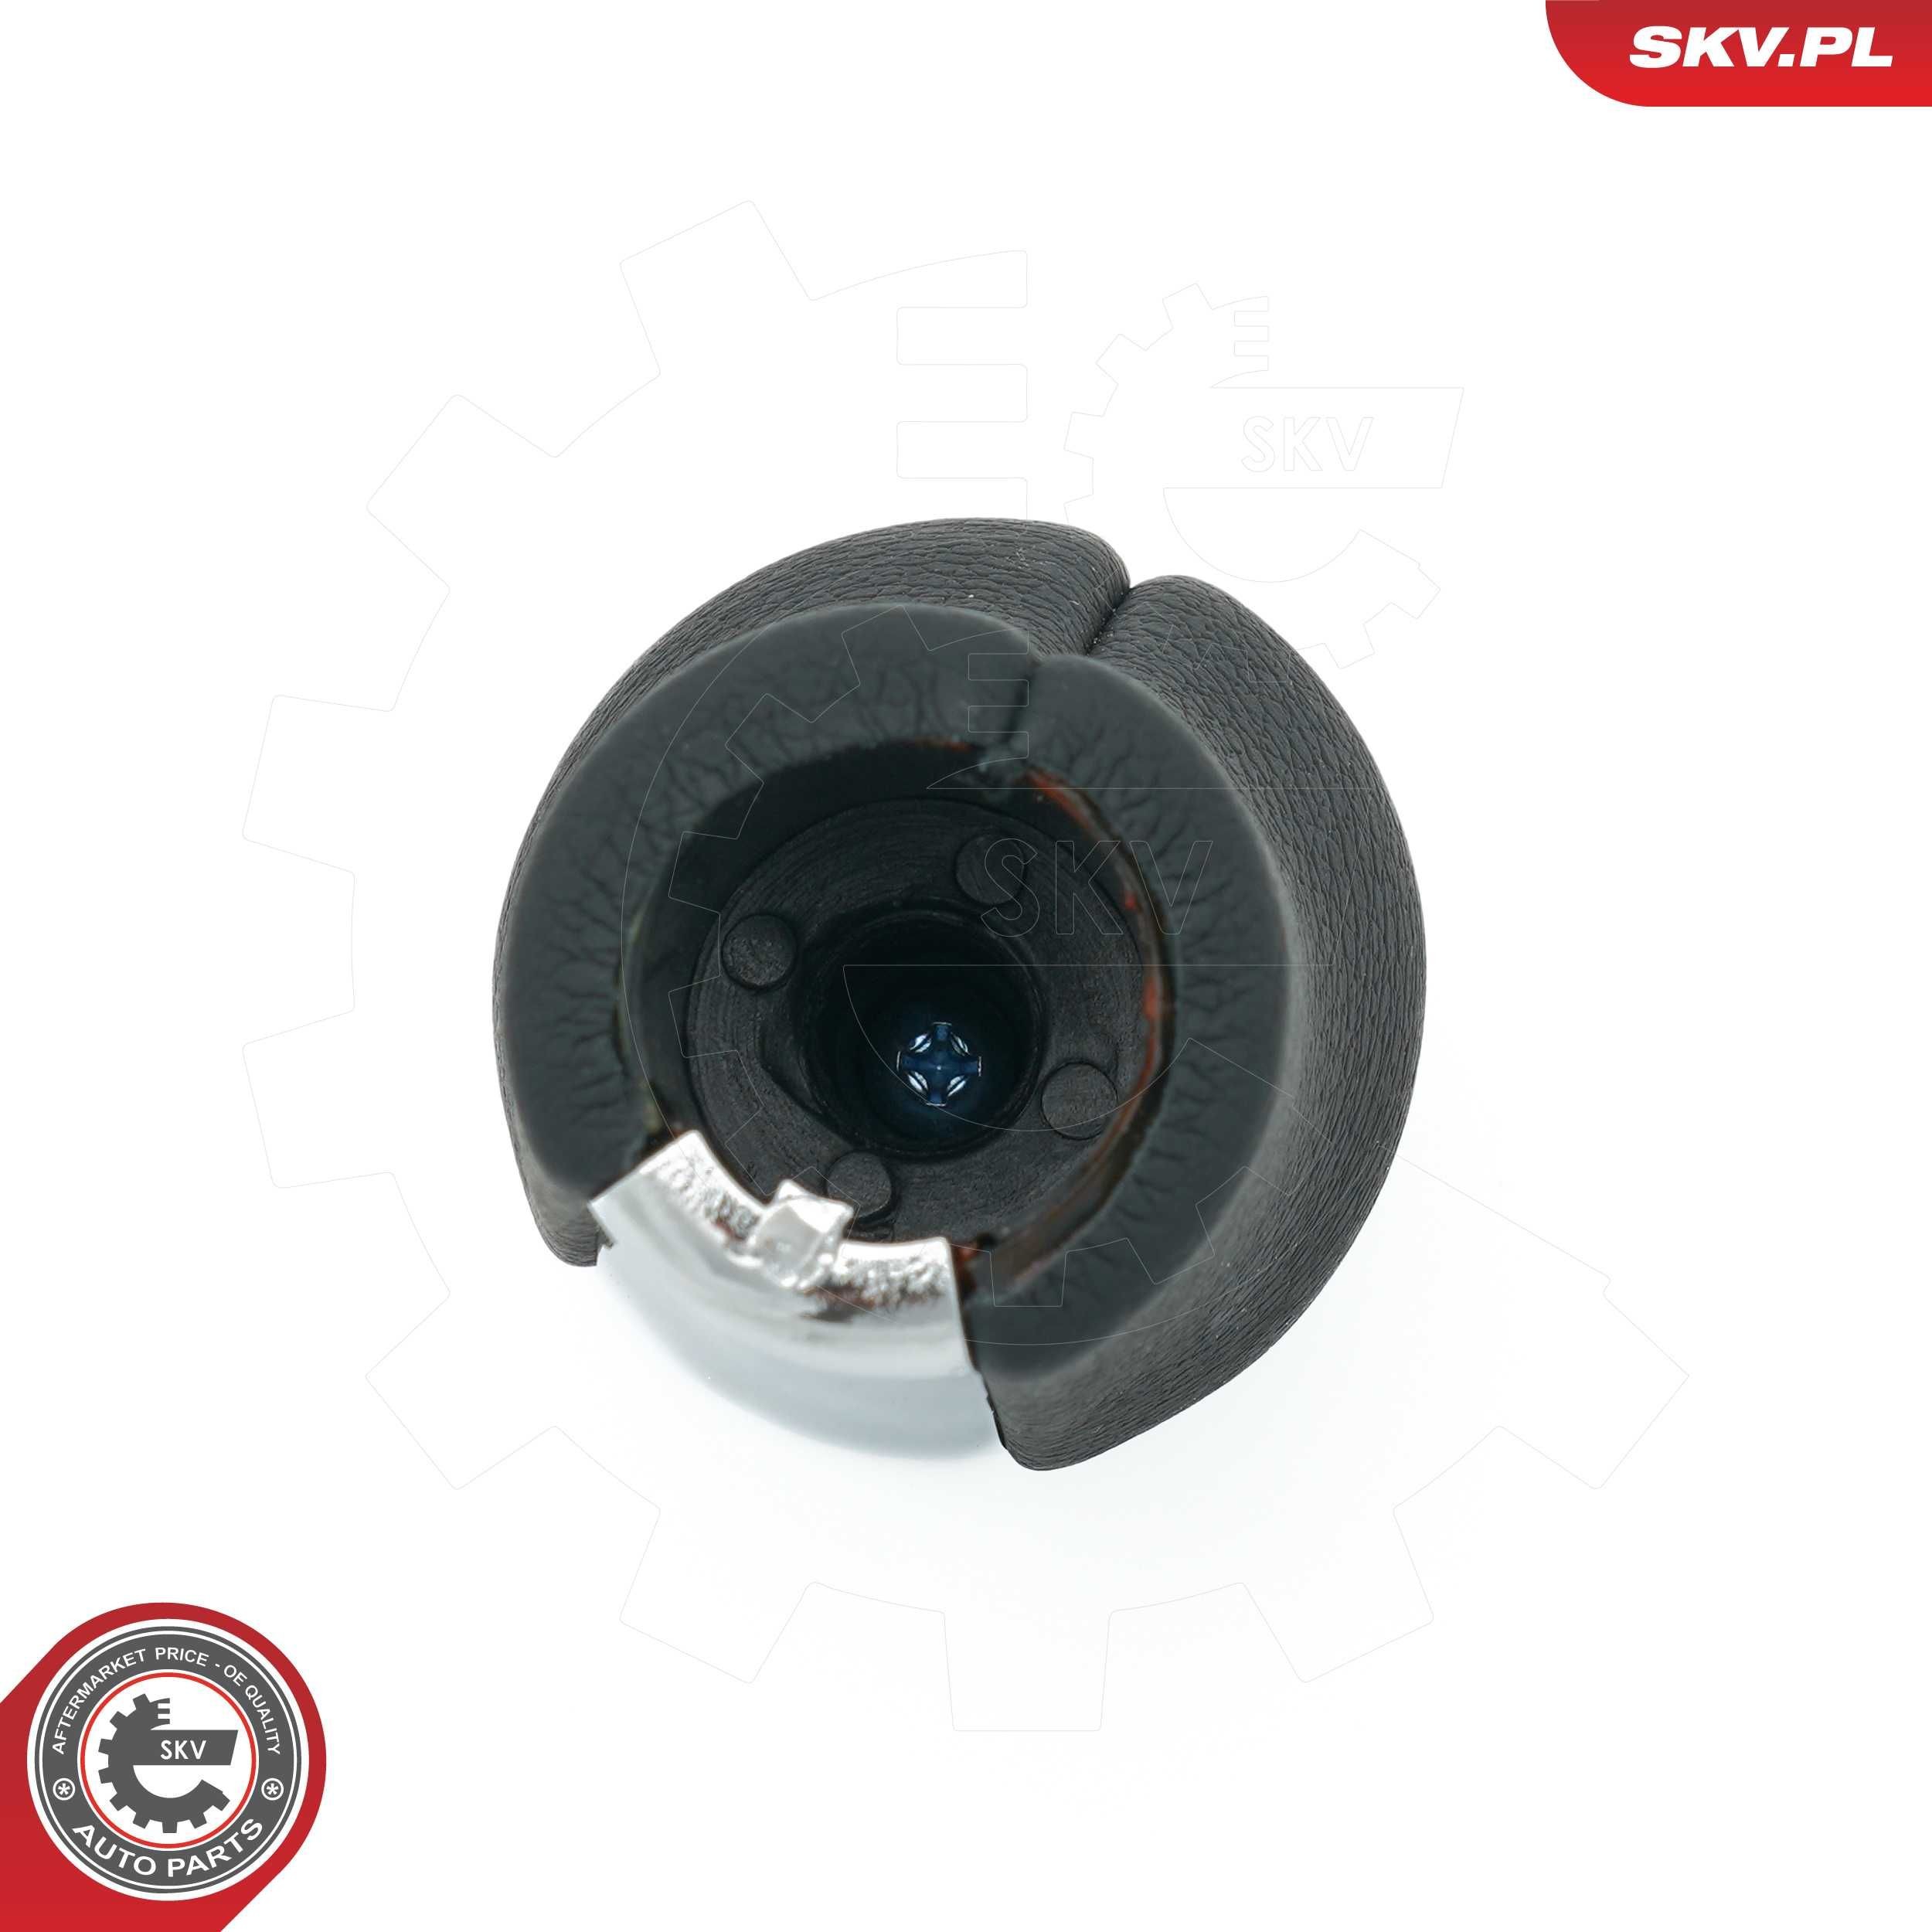 63SKV484 Gear shift knob ESEN SKV 63SKV484 review and test